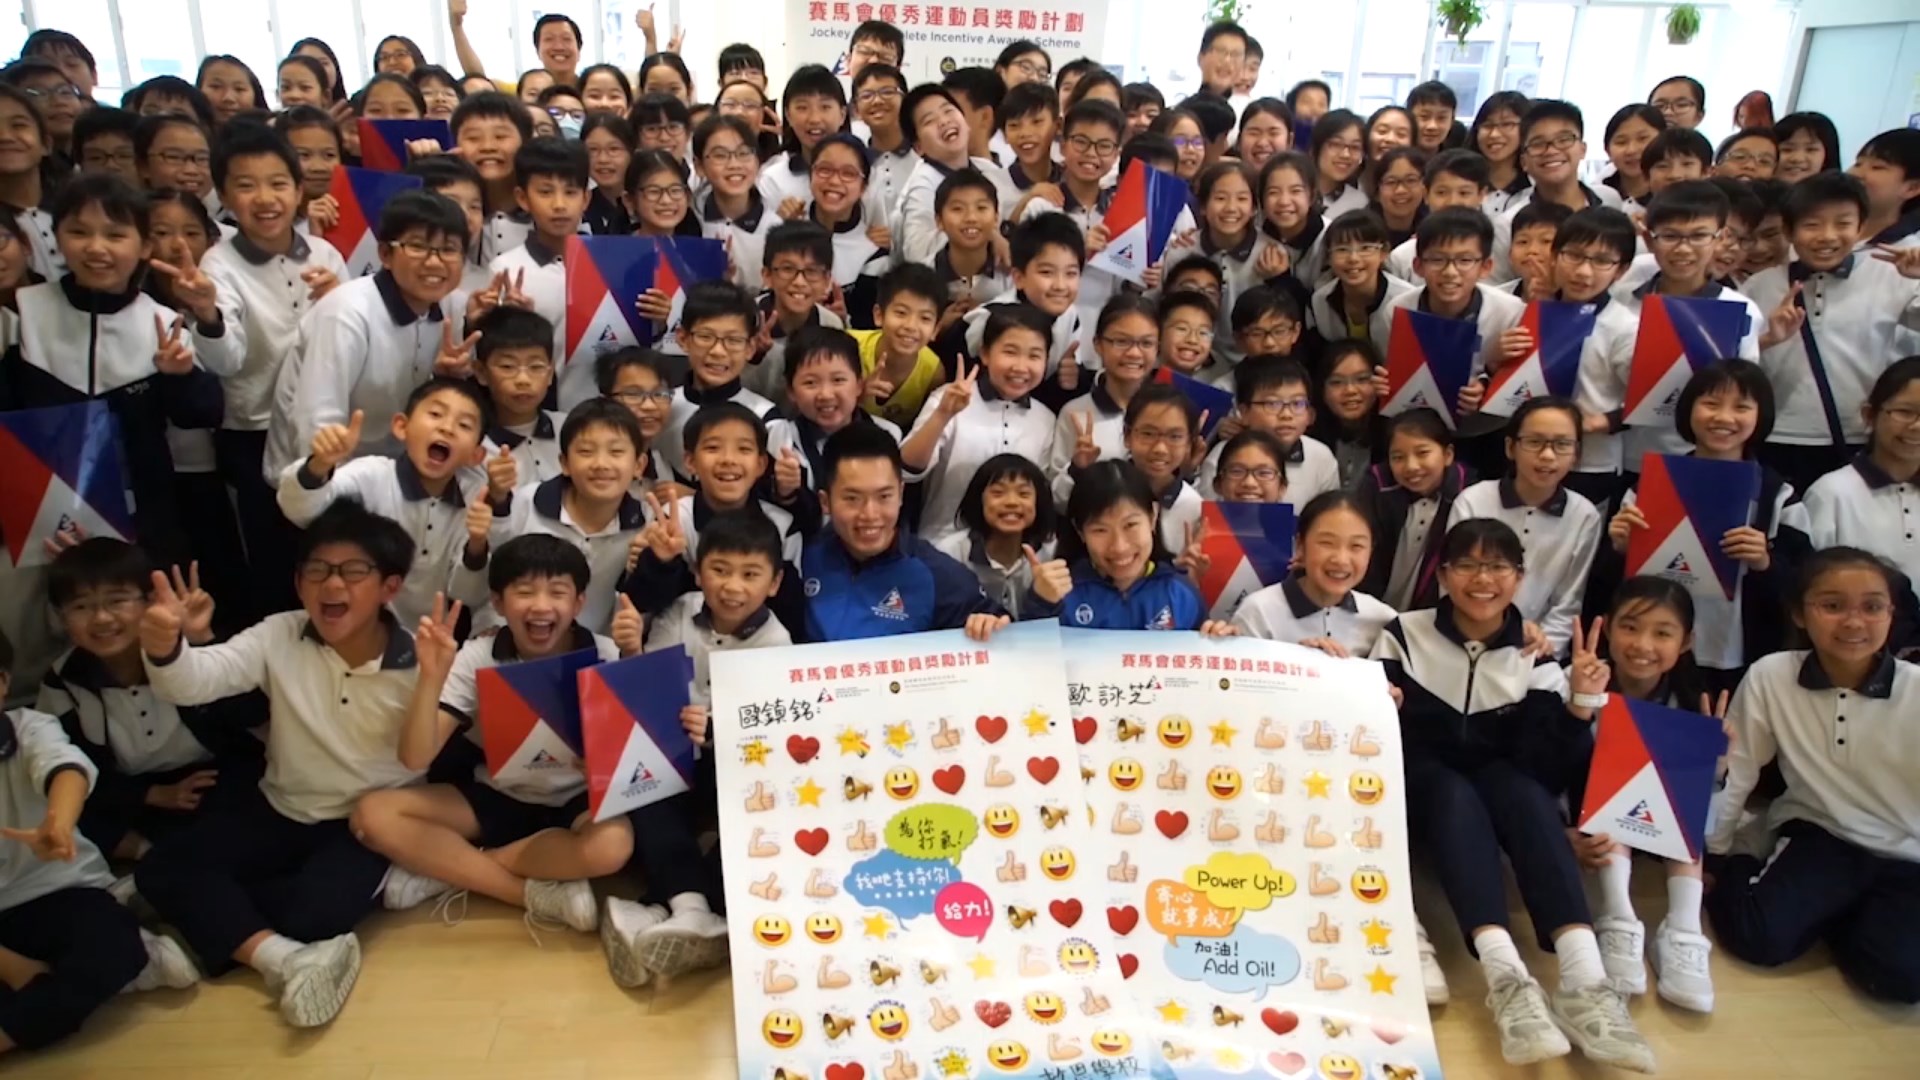 Hong Kong athletes visit various schools